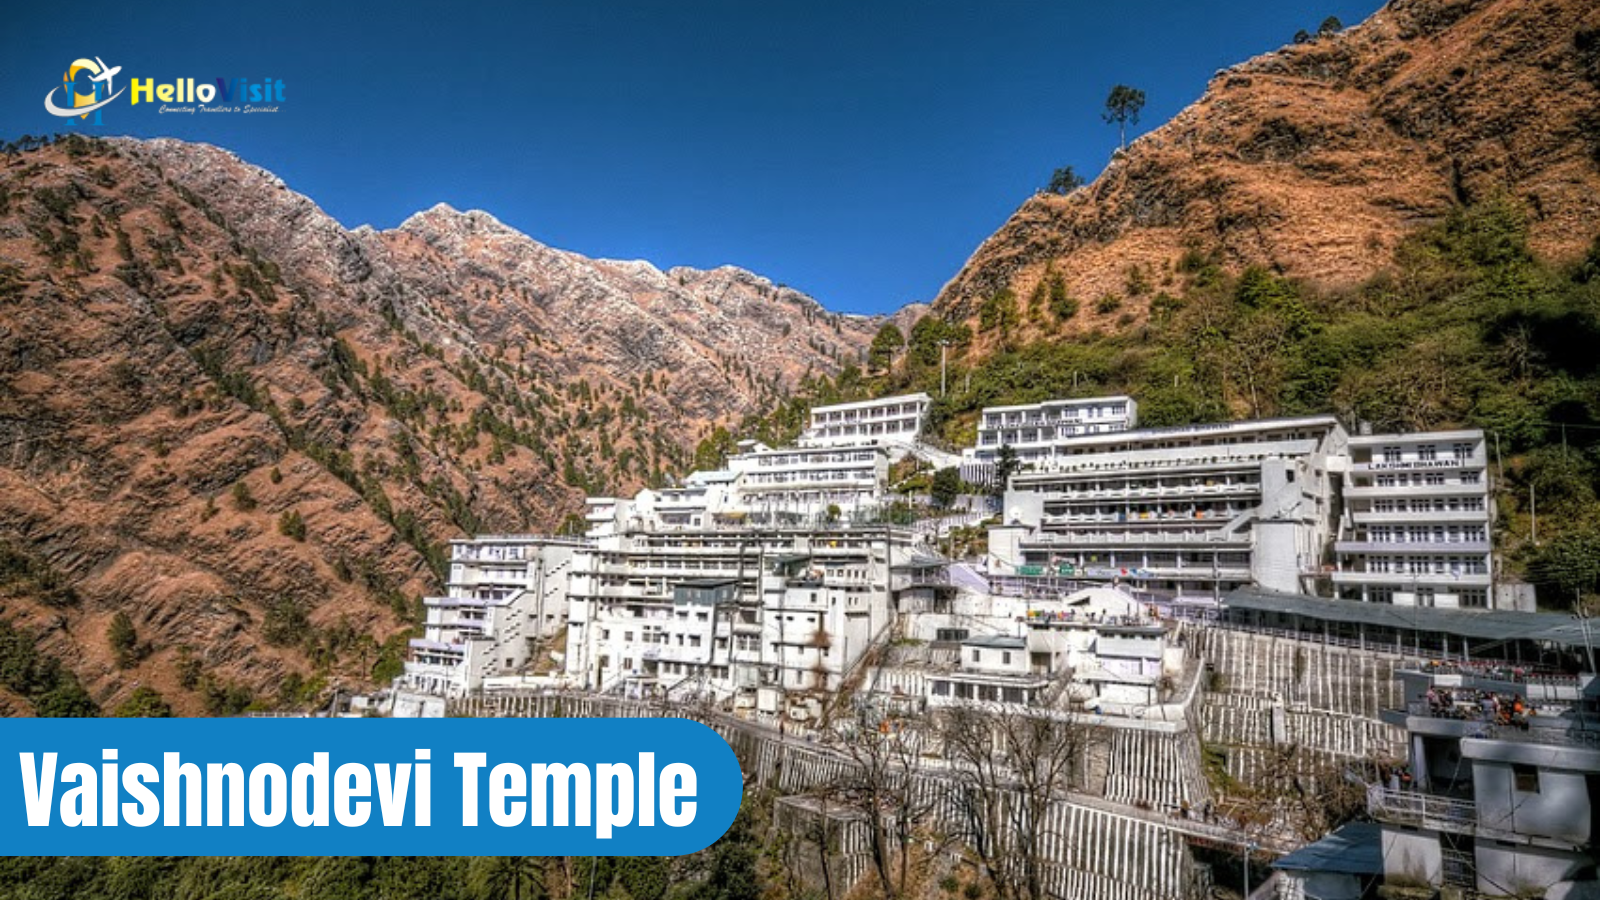 Vaishnodevi Temple, Jammu and Kashmir